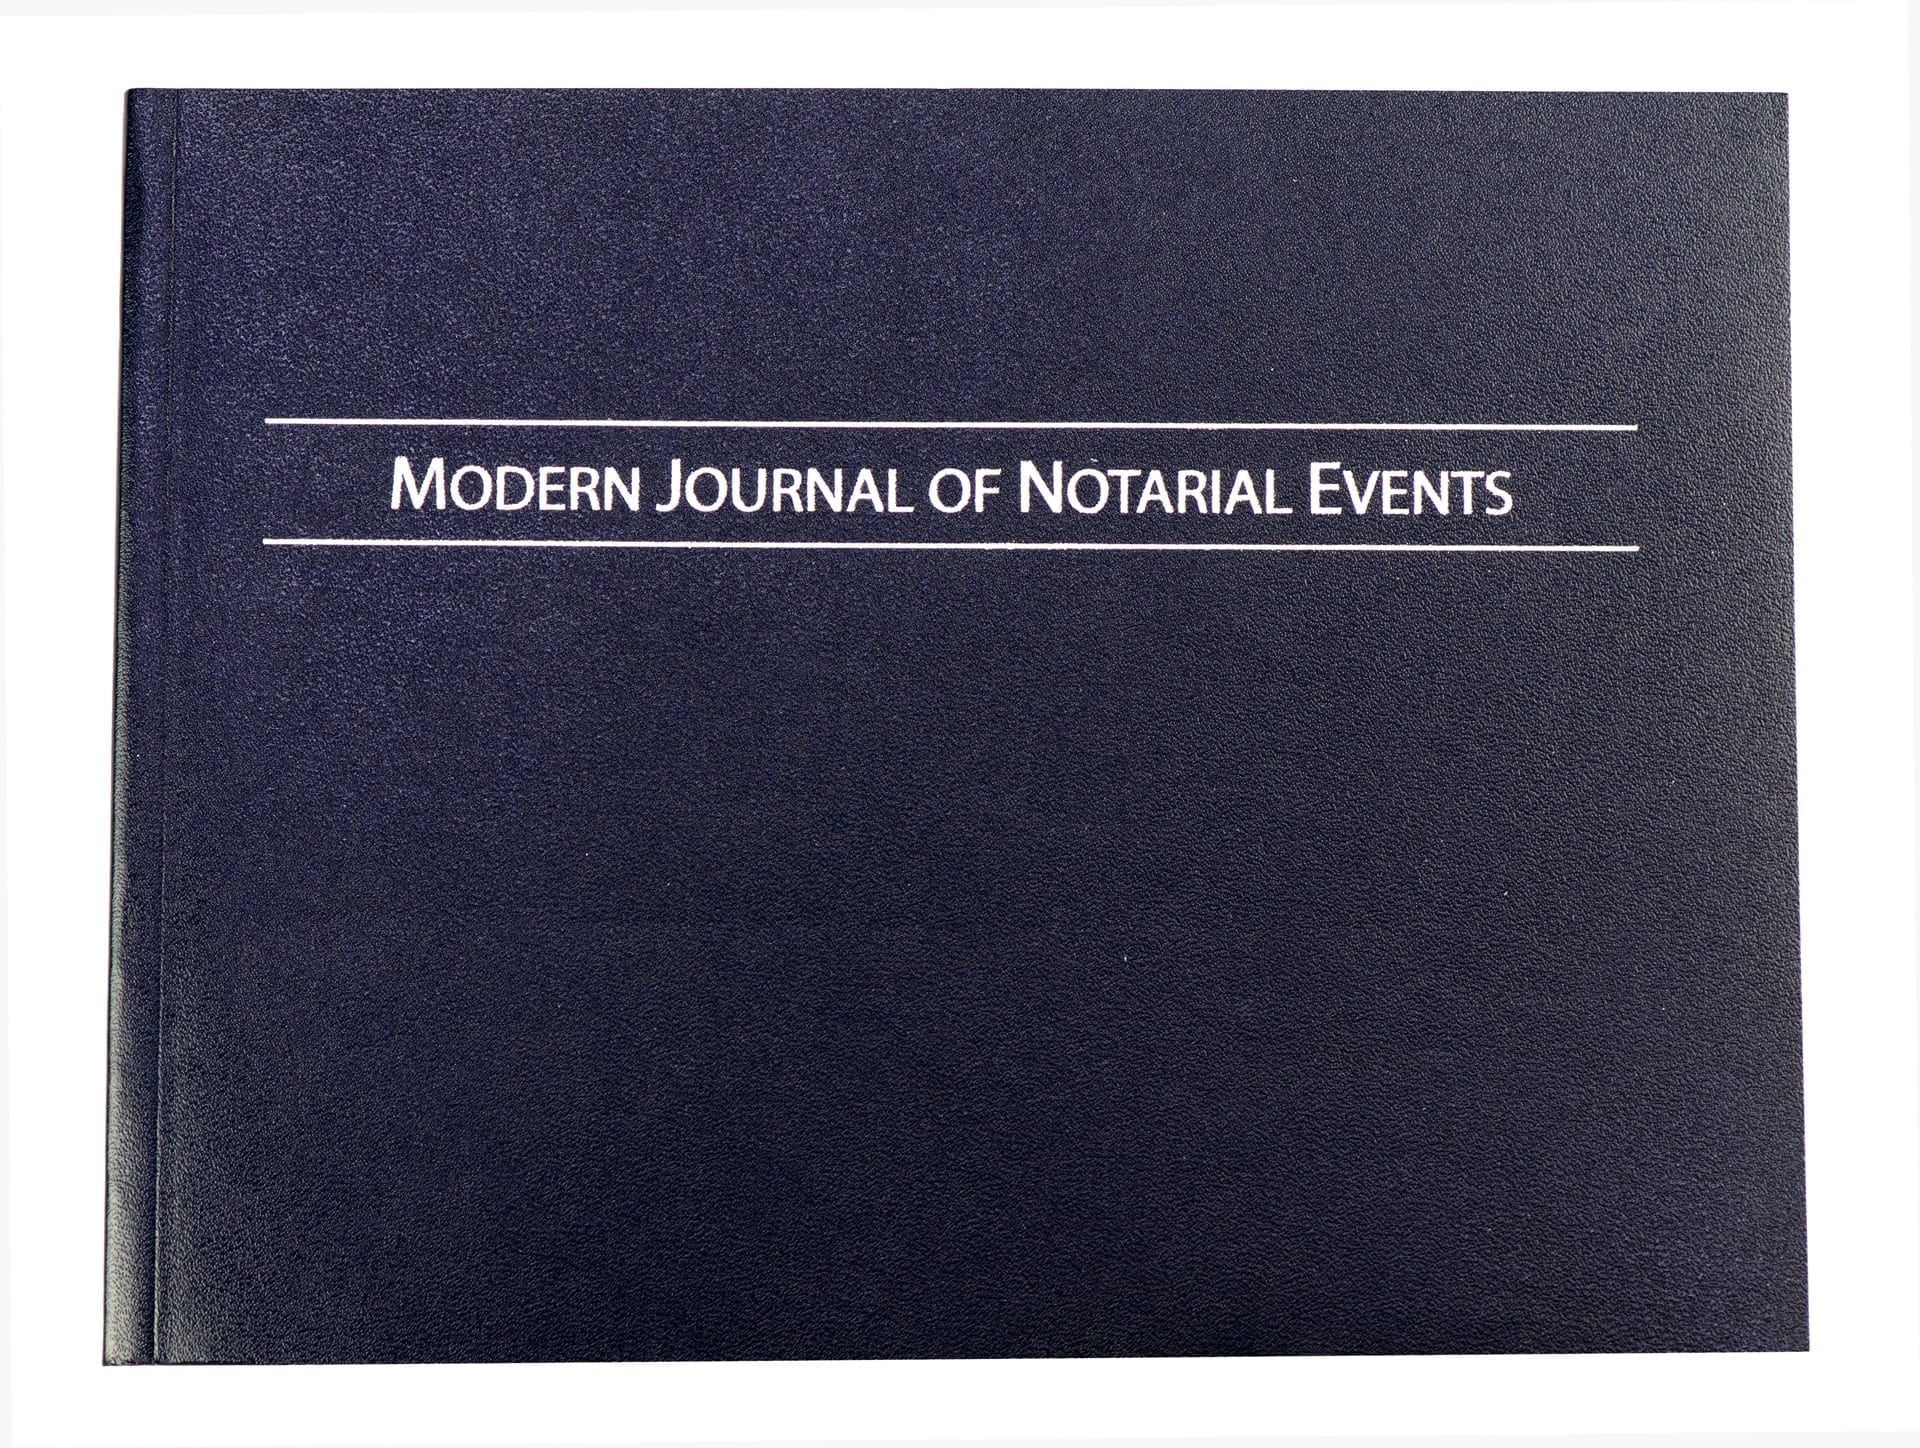 Notary Journal - Modern